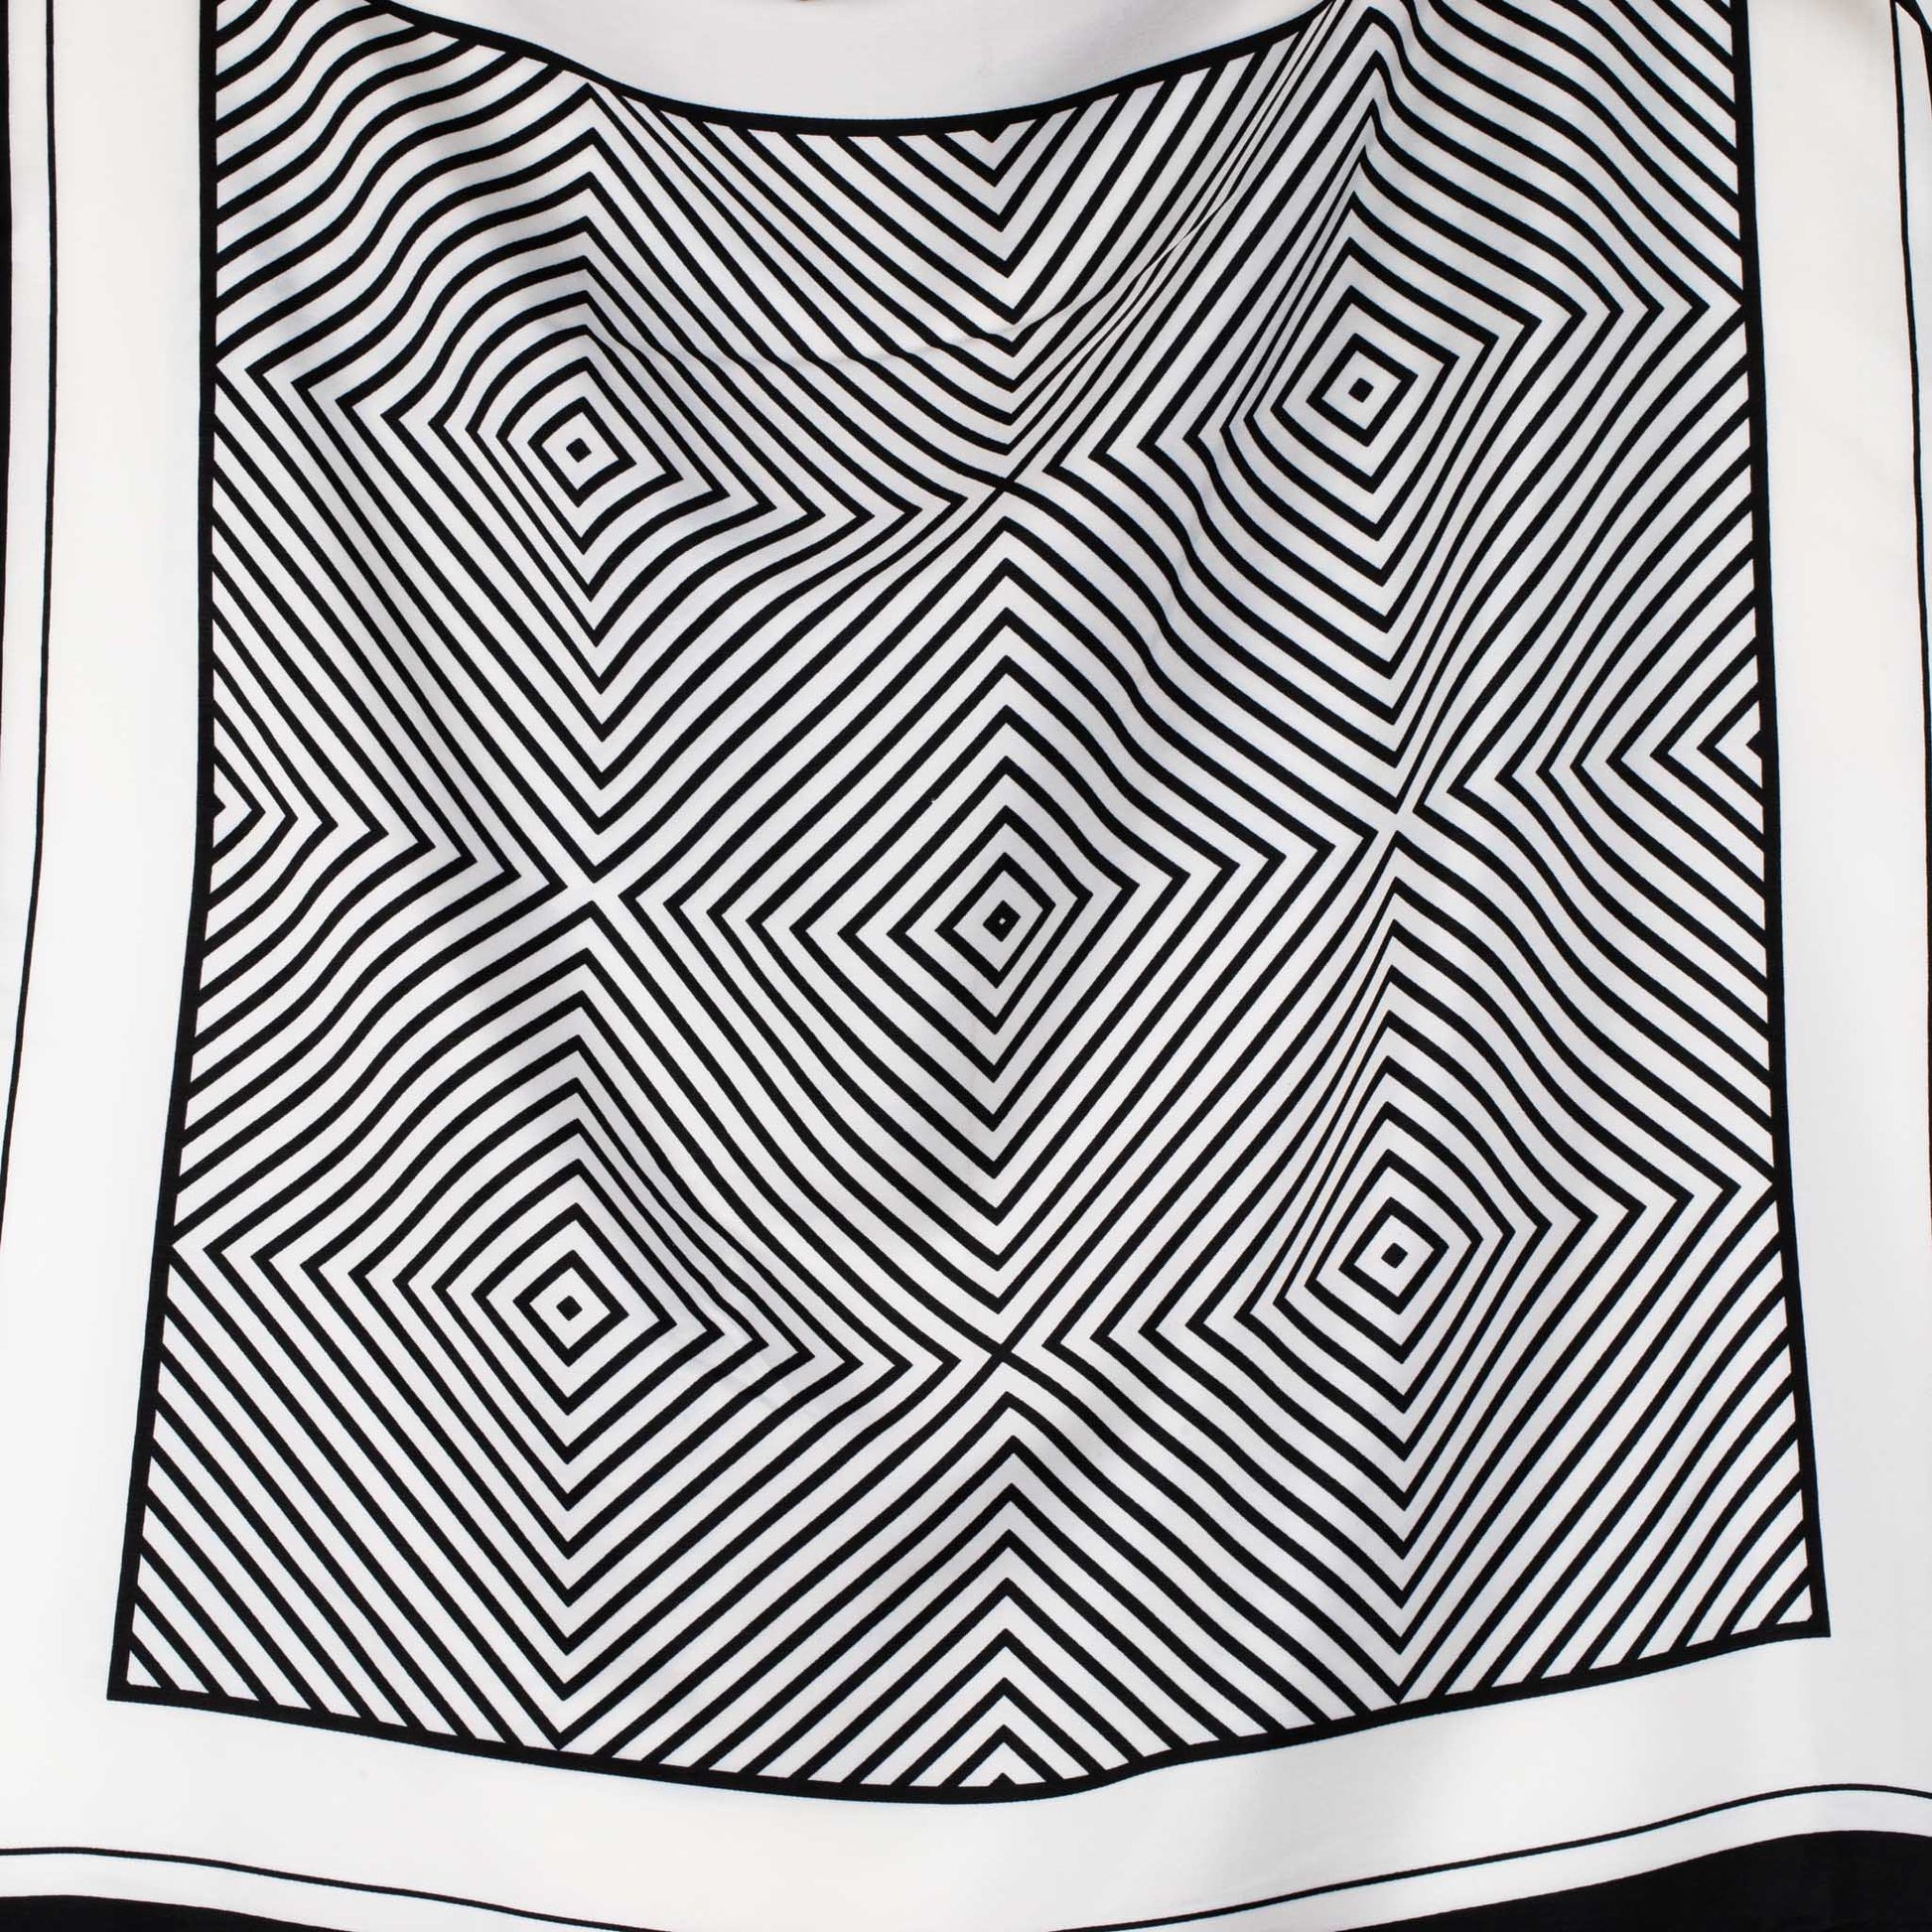 Eșarfă damă din satin , imprimeu cu romburi, 60 x 60 cm - Alb, Negru